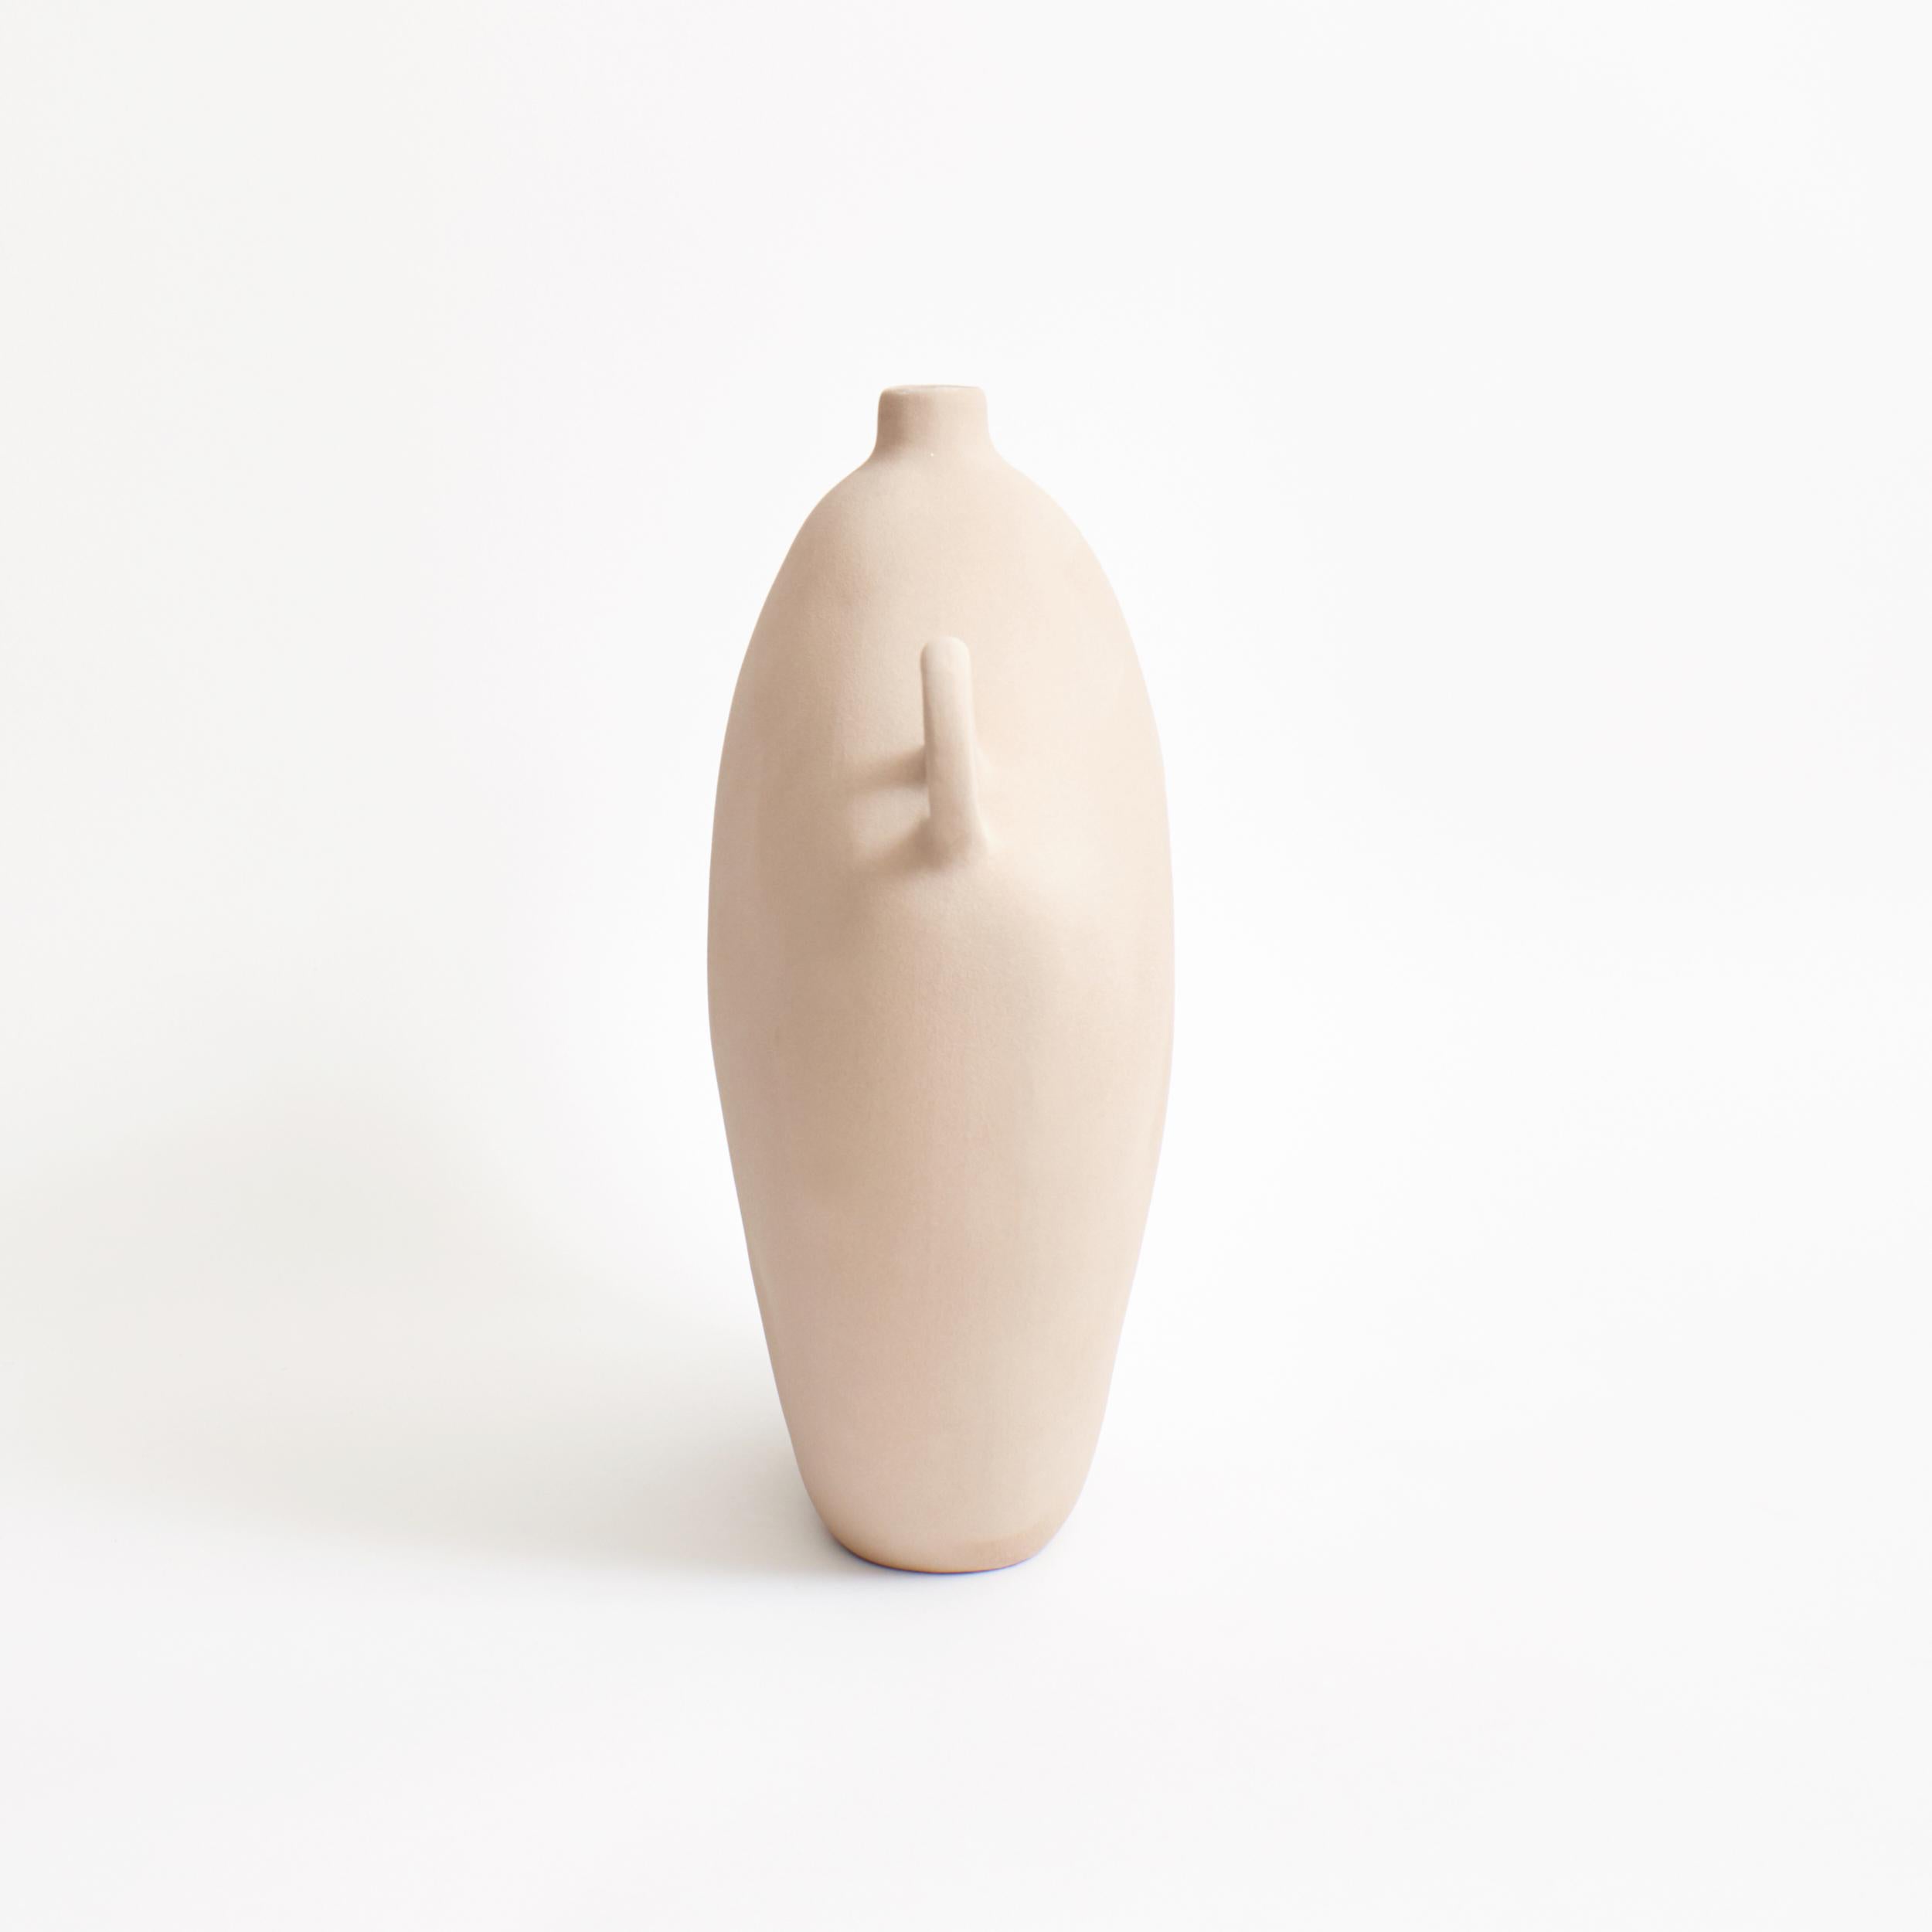 Maria Vessel in Hafer
Entworfen von Projekt 213A im Jahr 2020
Handgefertigtes Steingut

Diese Vase ist von der griechisch-römischen Epoche inspiriert, hat ein zeitloses Aussehen und ist mit einer modernen, strukturierten, glänzenden Glasur versehen.